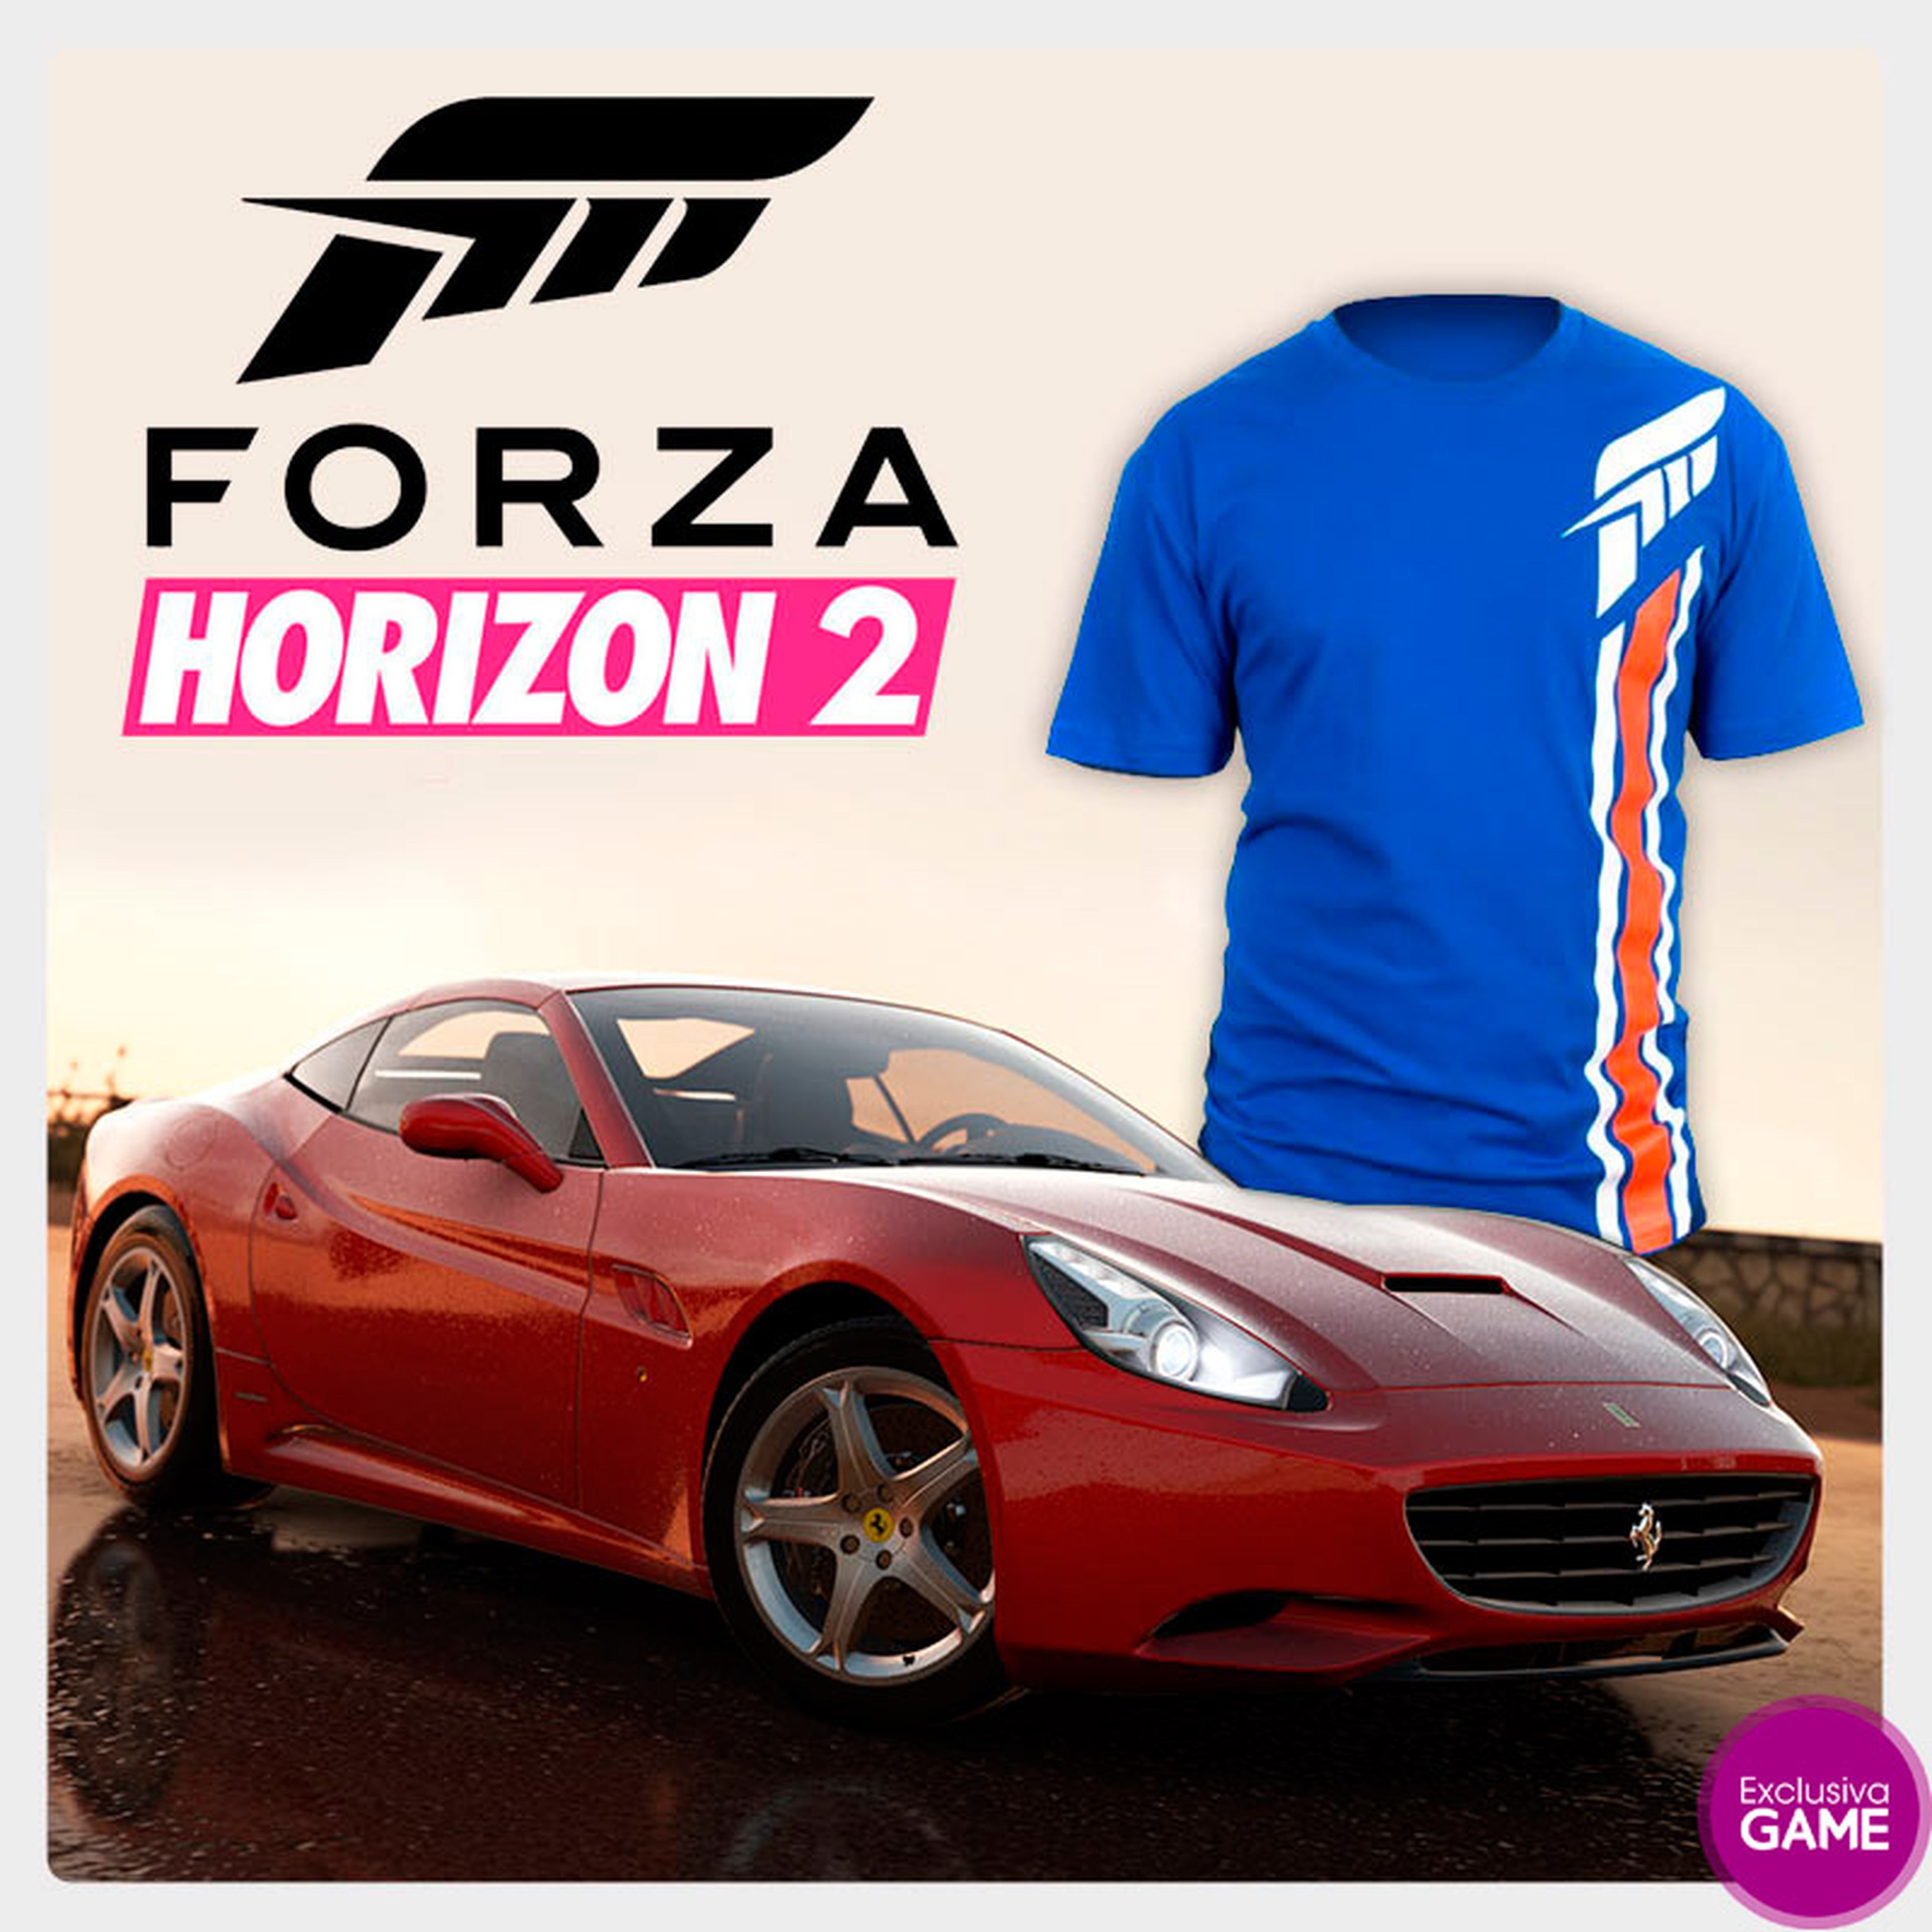 Regalos por reservar Forza Horizon 2 en GAME